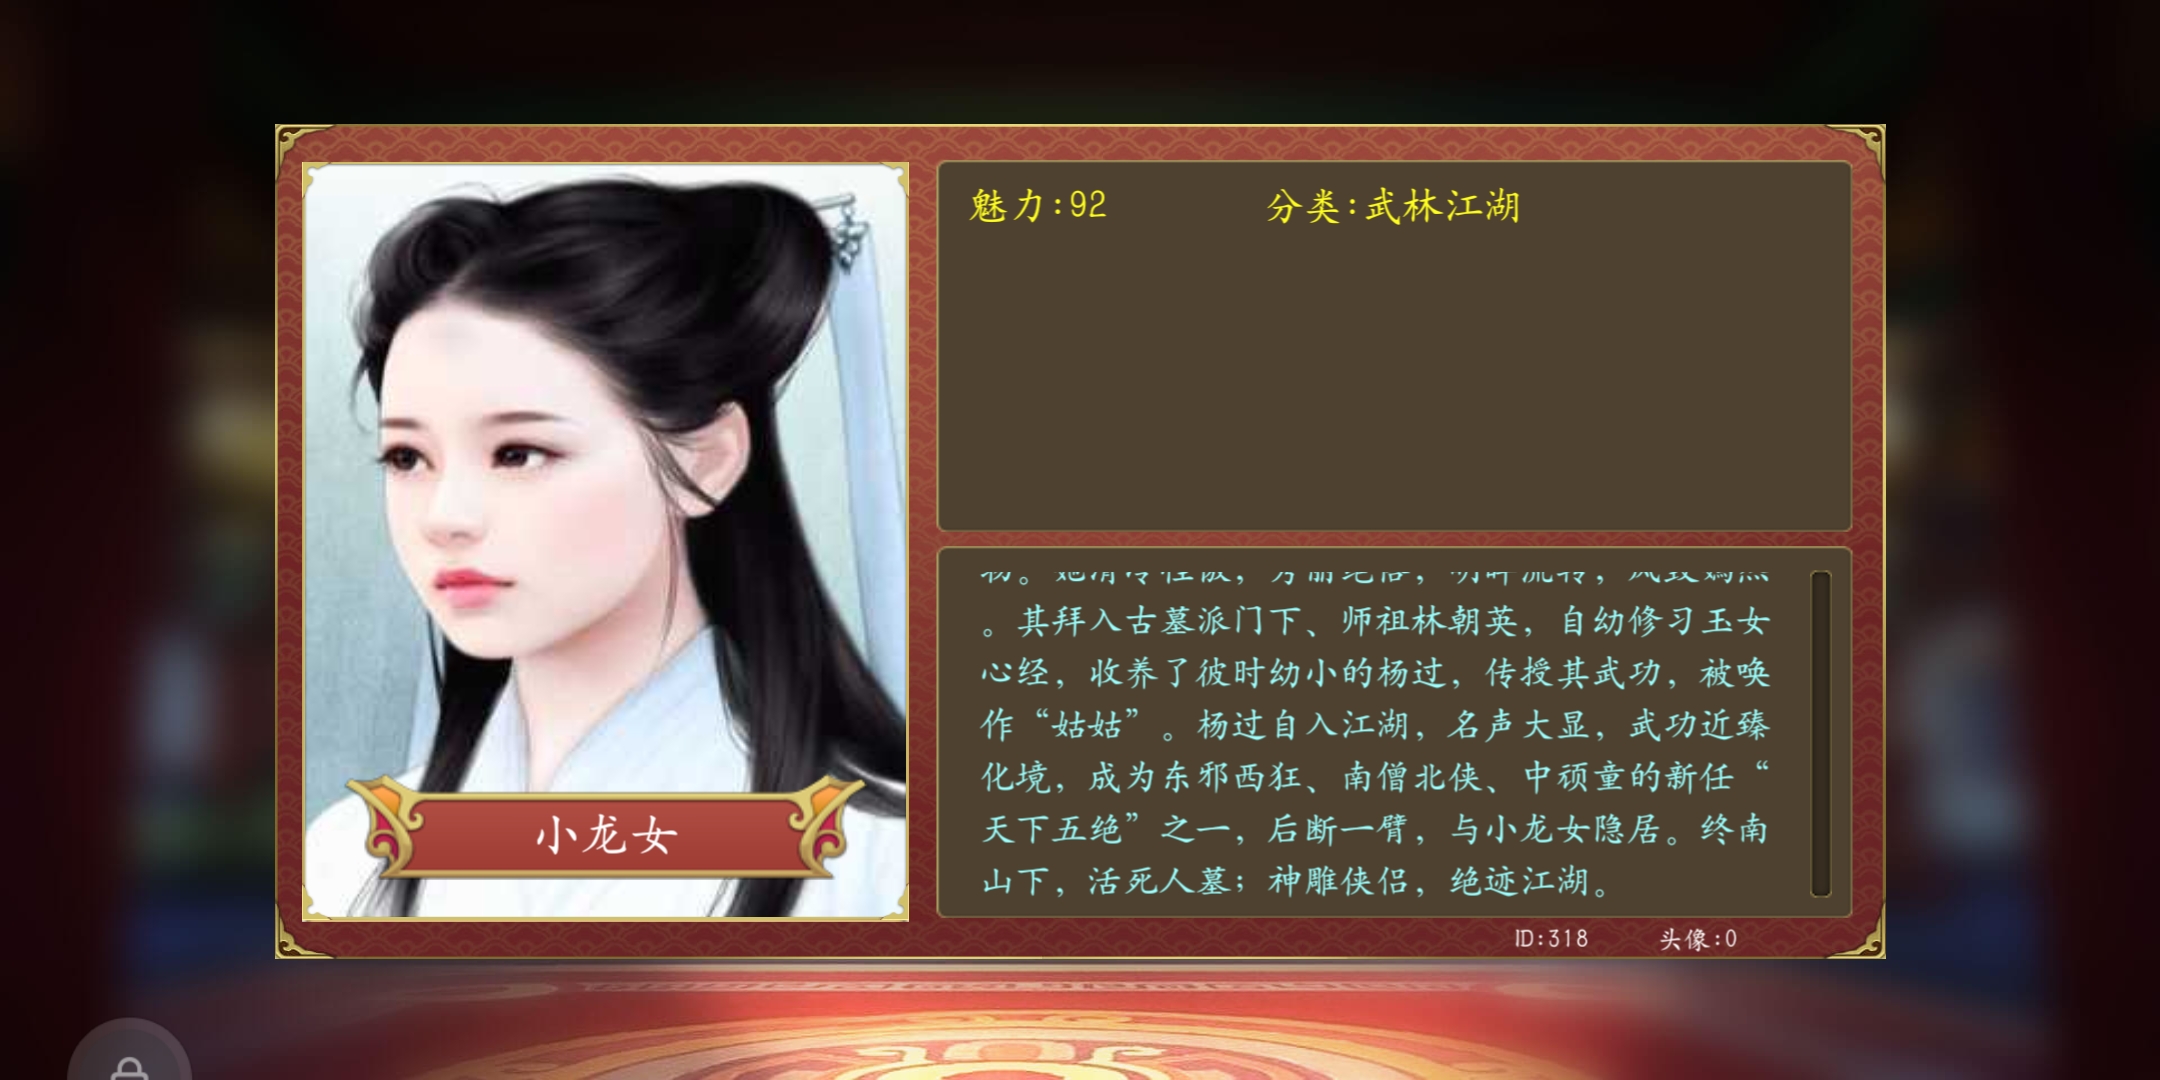 为啥要用陈妍希这种啊,明明游戏里有刘亦菲的小龙女造型的图啊